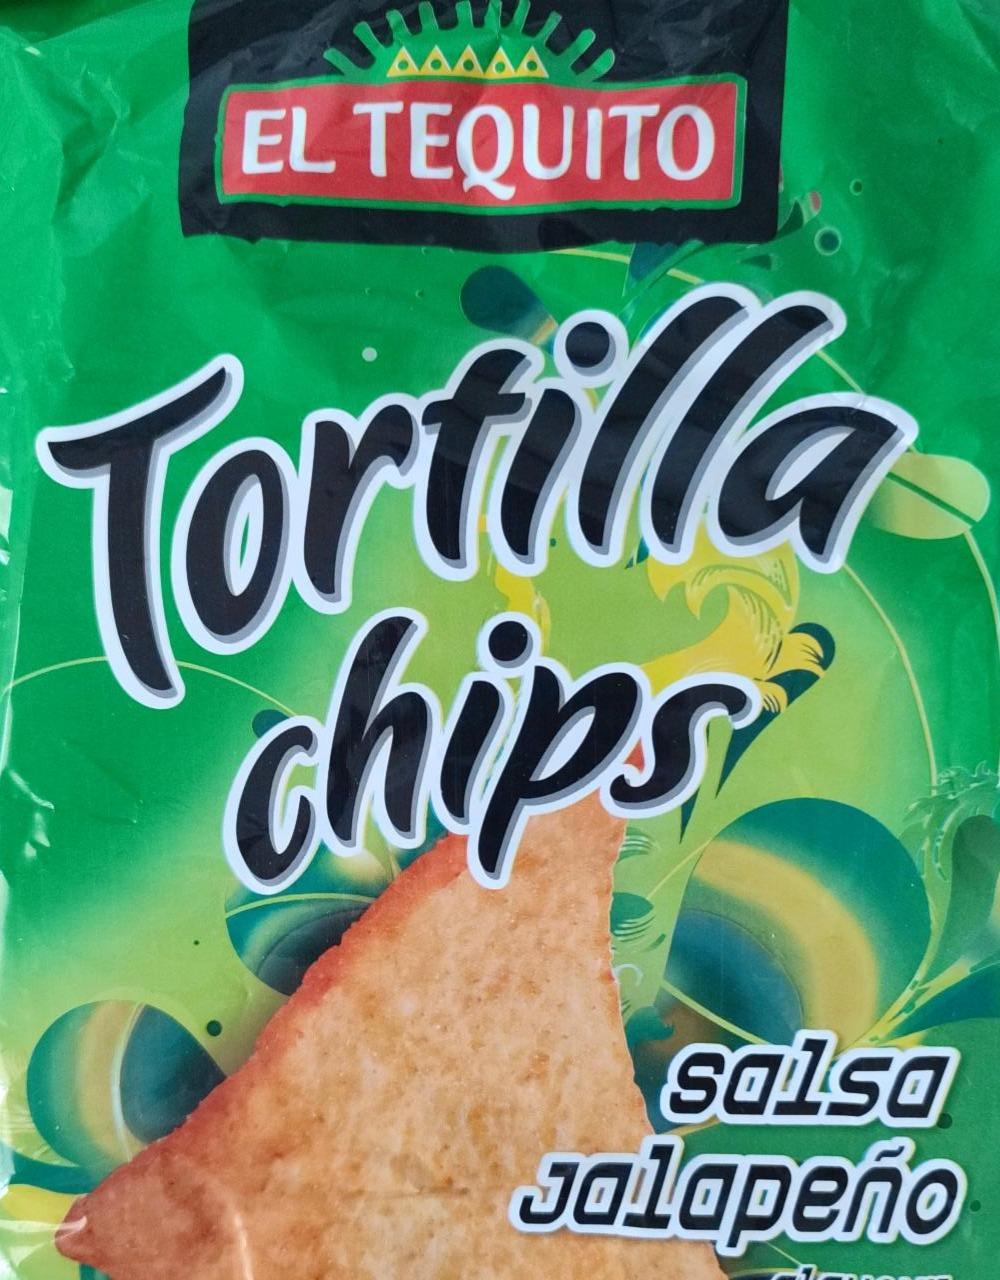 Zdjęcia - Tortilla Chips Salsa Jalapeno El Tequito